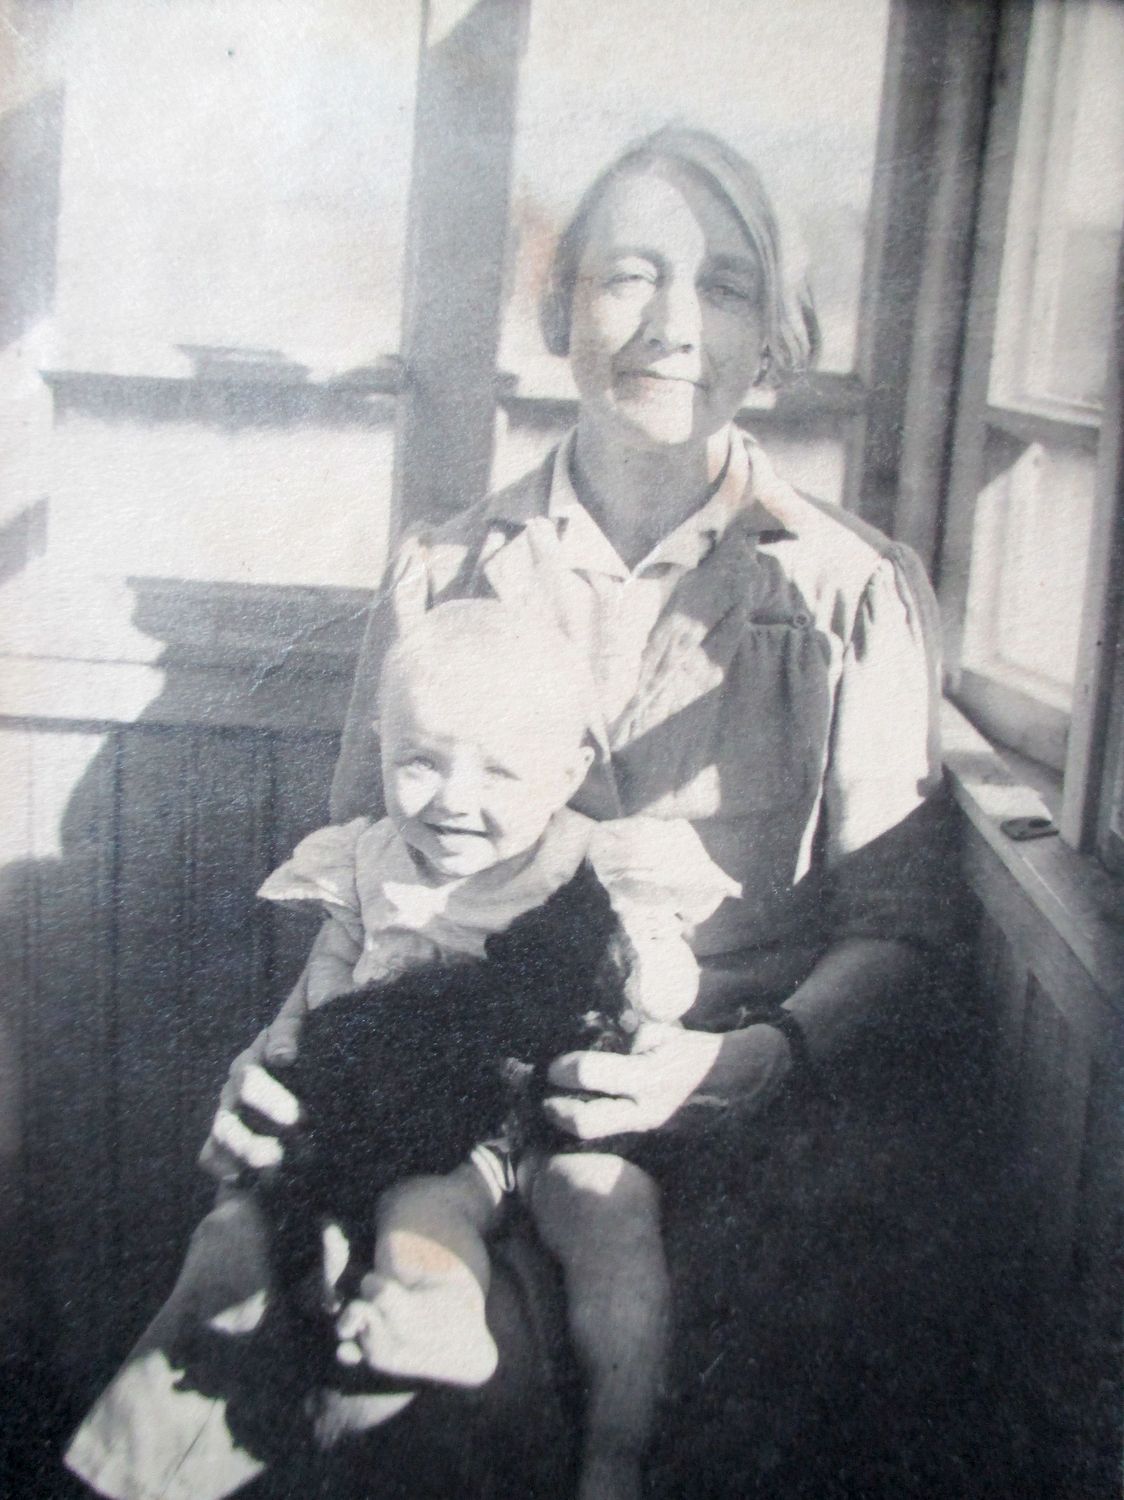 А.И. Цветаева с внучкой Ритой и кошкой на балконе дома в Печаткино, предположительно 1948г. Из архива О. Трухачёвой